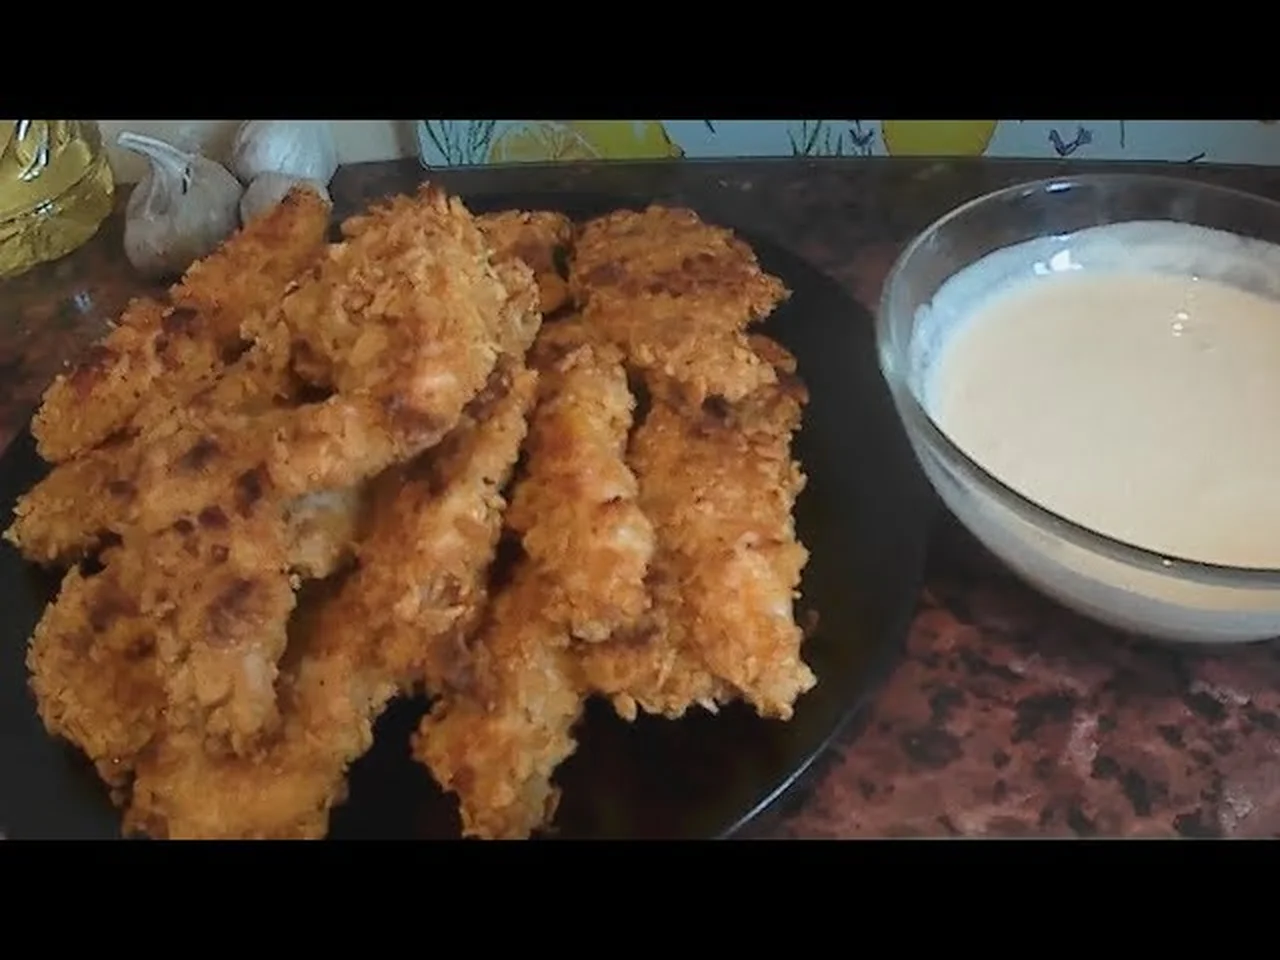 Pieczone piersi kurze w płatkach kukurydzianych / Baked Cornflake Crusted Chicken Strips